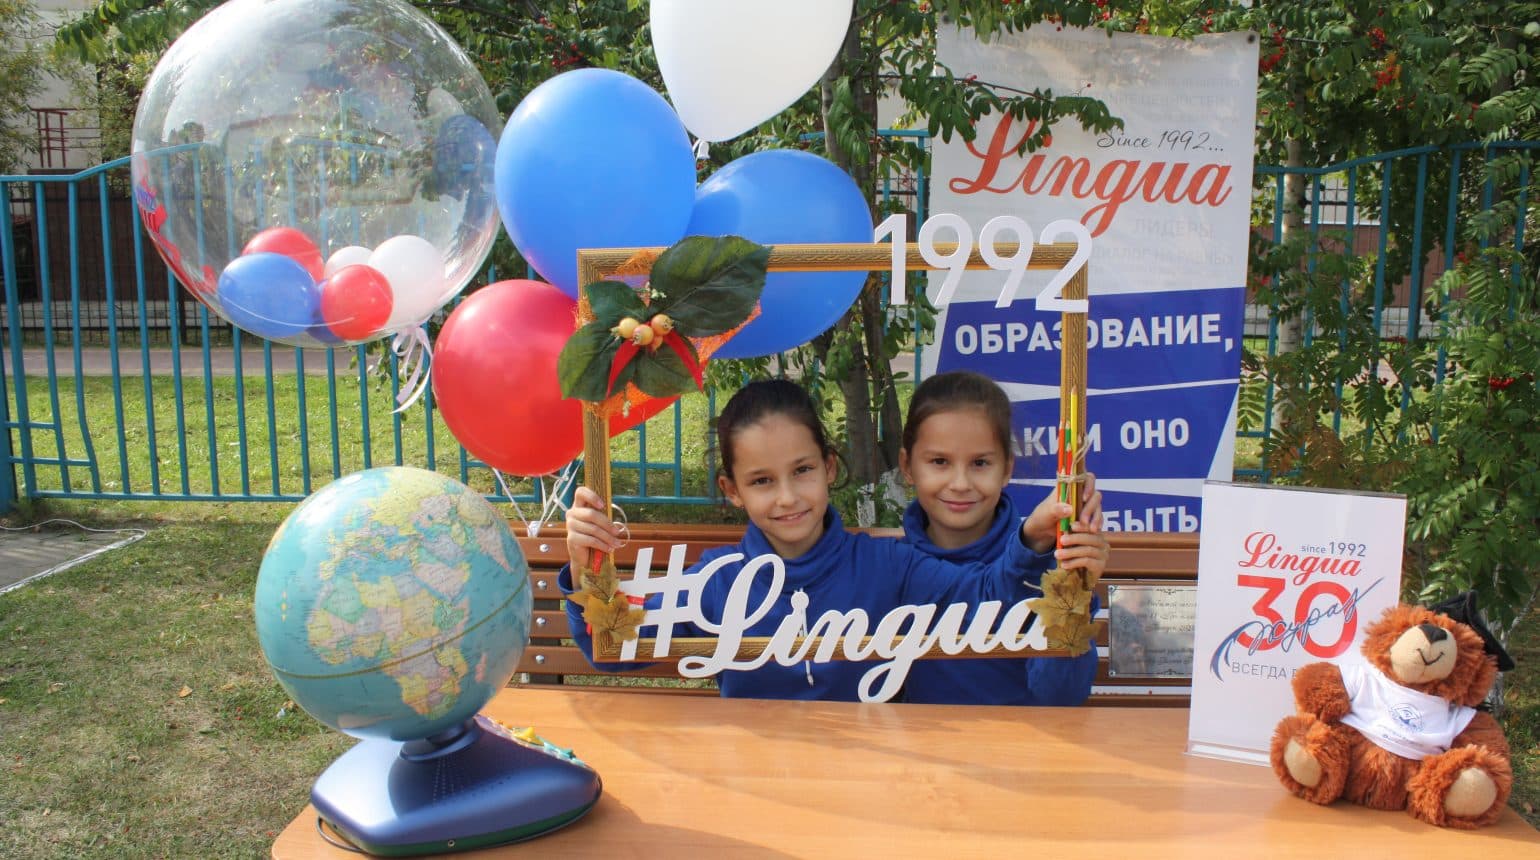 Lingua дарит праздник!